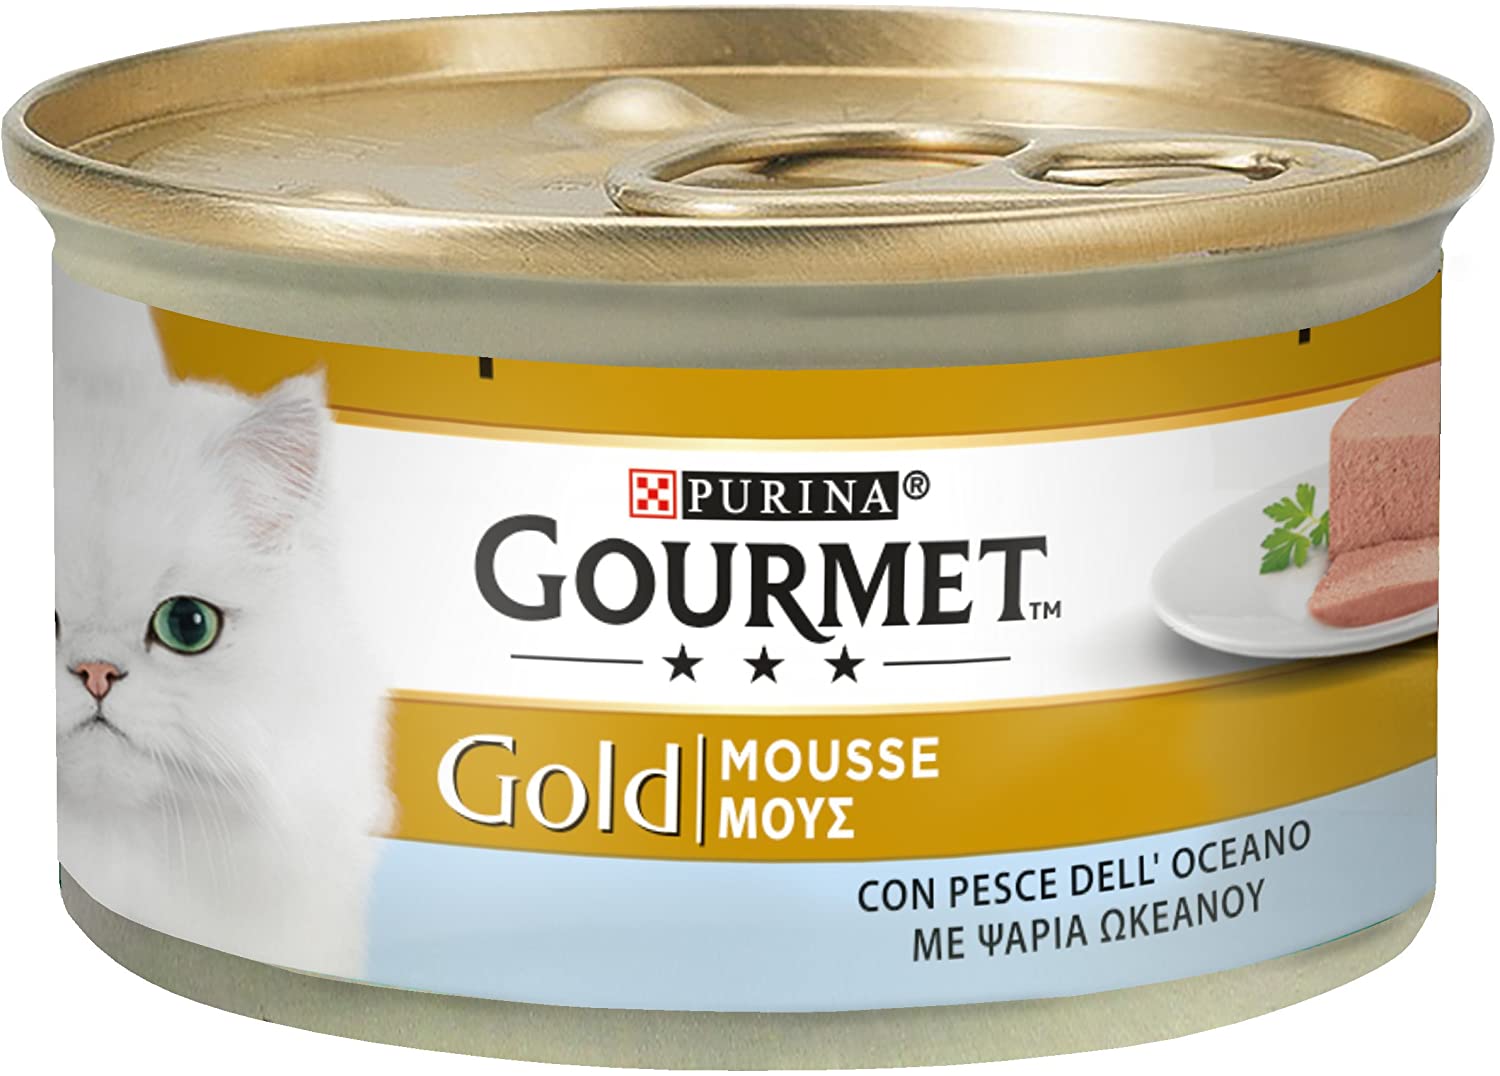  Gourmet Gold Mousse para El Gato, con Pescado Océano, 85 g – Pack de 24 Unidades 